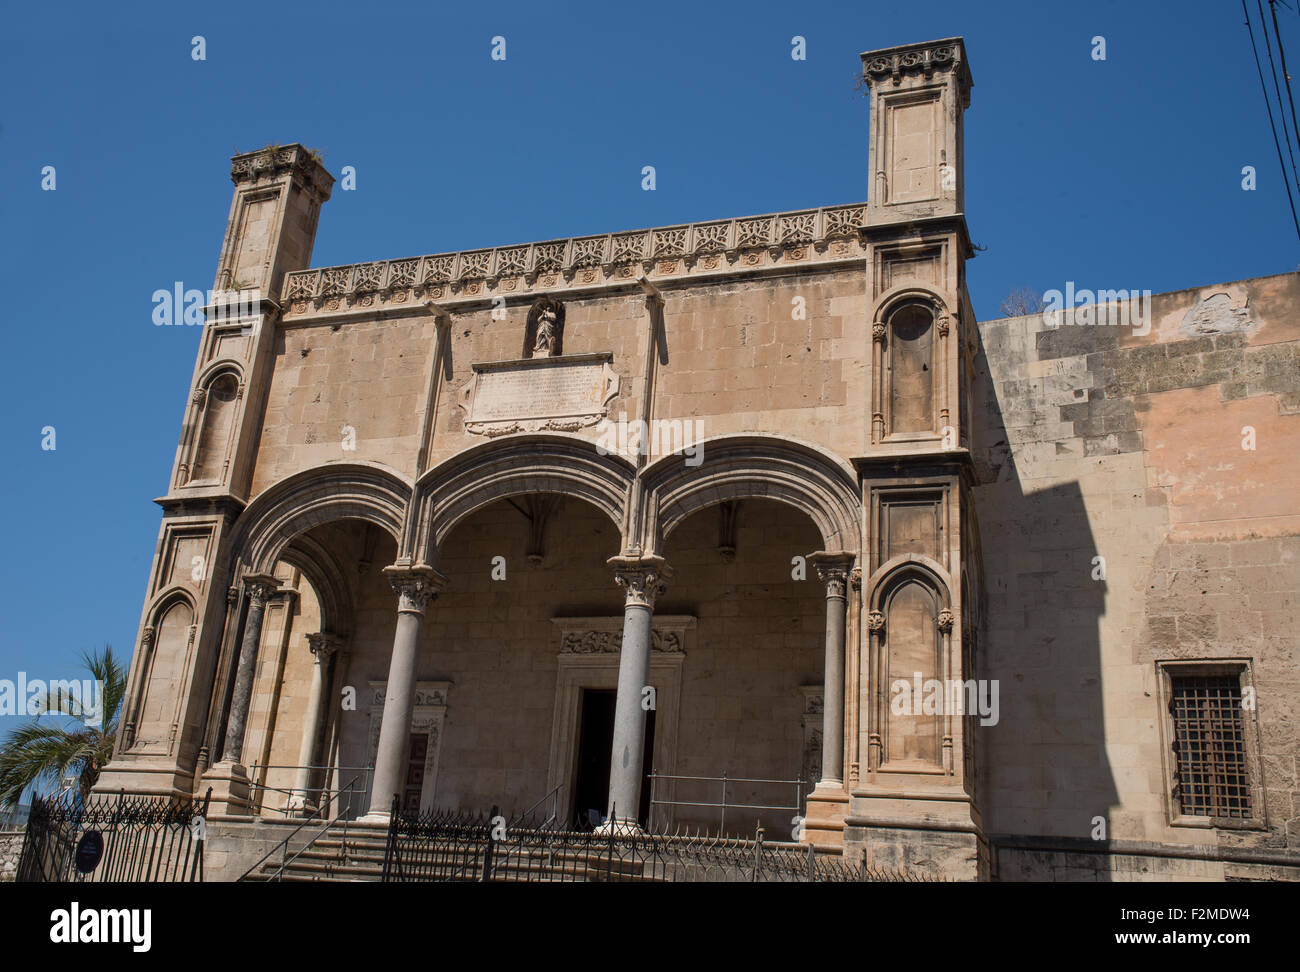 Santa Maria della Catena in Piazzetta delle Dogane, Palermo. Sicily. Italy. Stock Photo